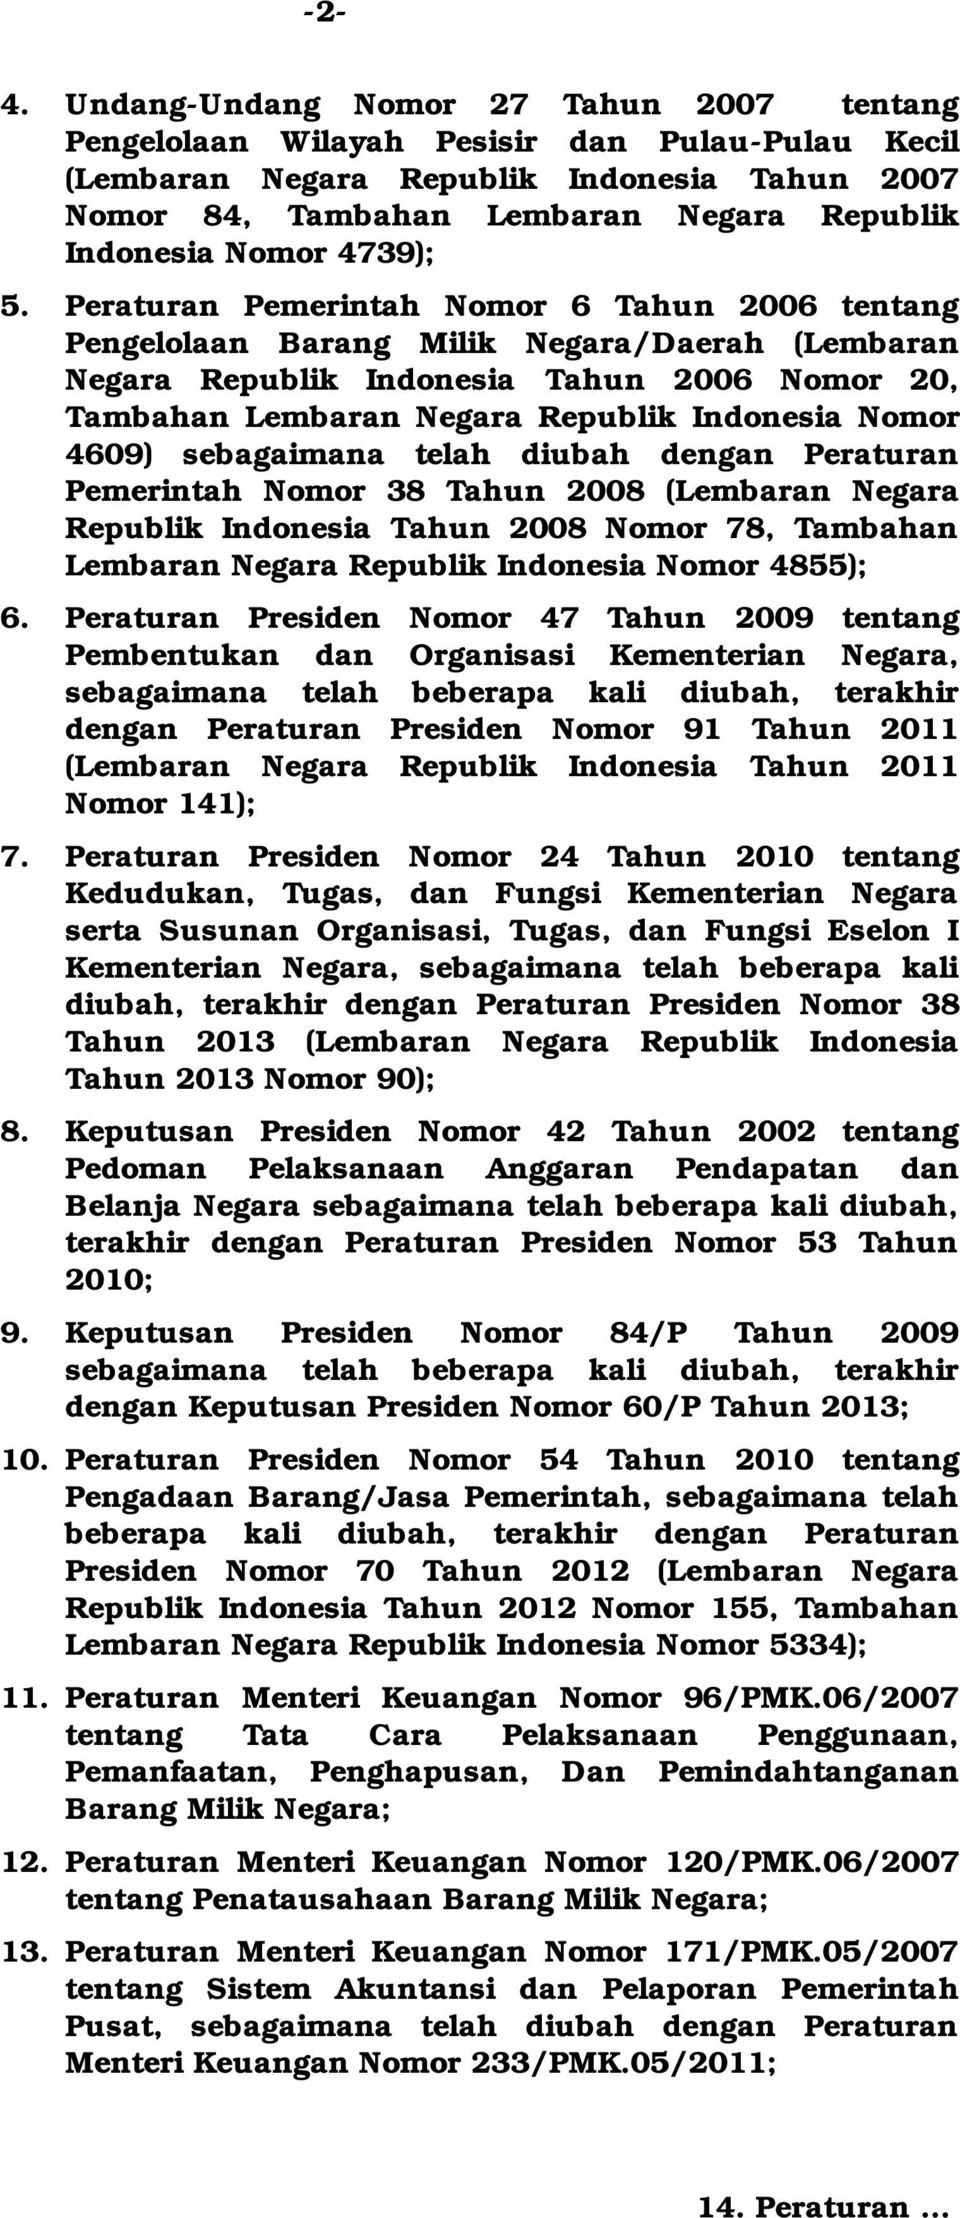 Peraturan Pemerintah Nomor 6 Tahun 2006 tentang Pengelolaan Barang Milik Negara/Daerah (Lembaran Negara Republik Indonesia Tahun 2006 Nomor 20, Tambahan Lembaran Negara Republik Indonesia Nomor 4609)